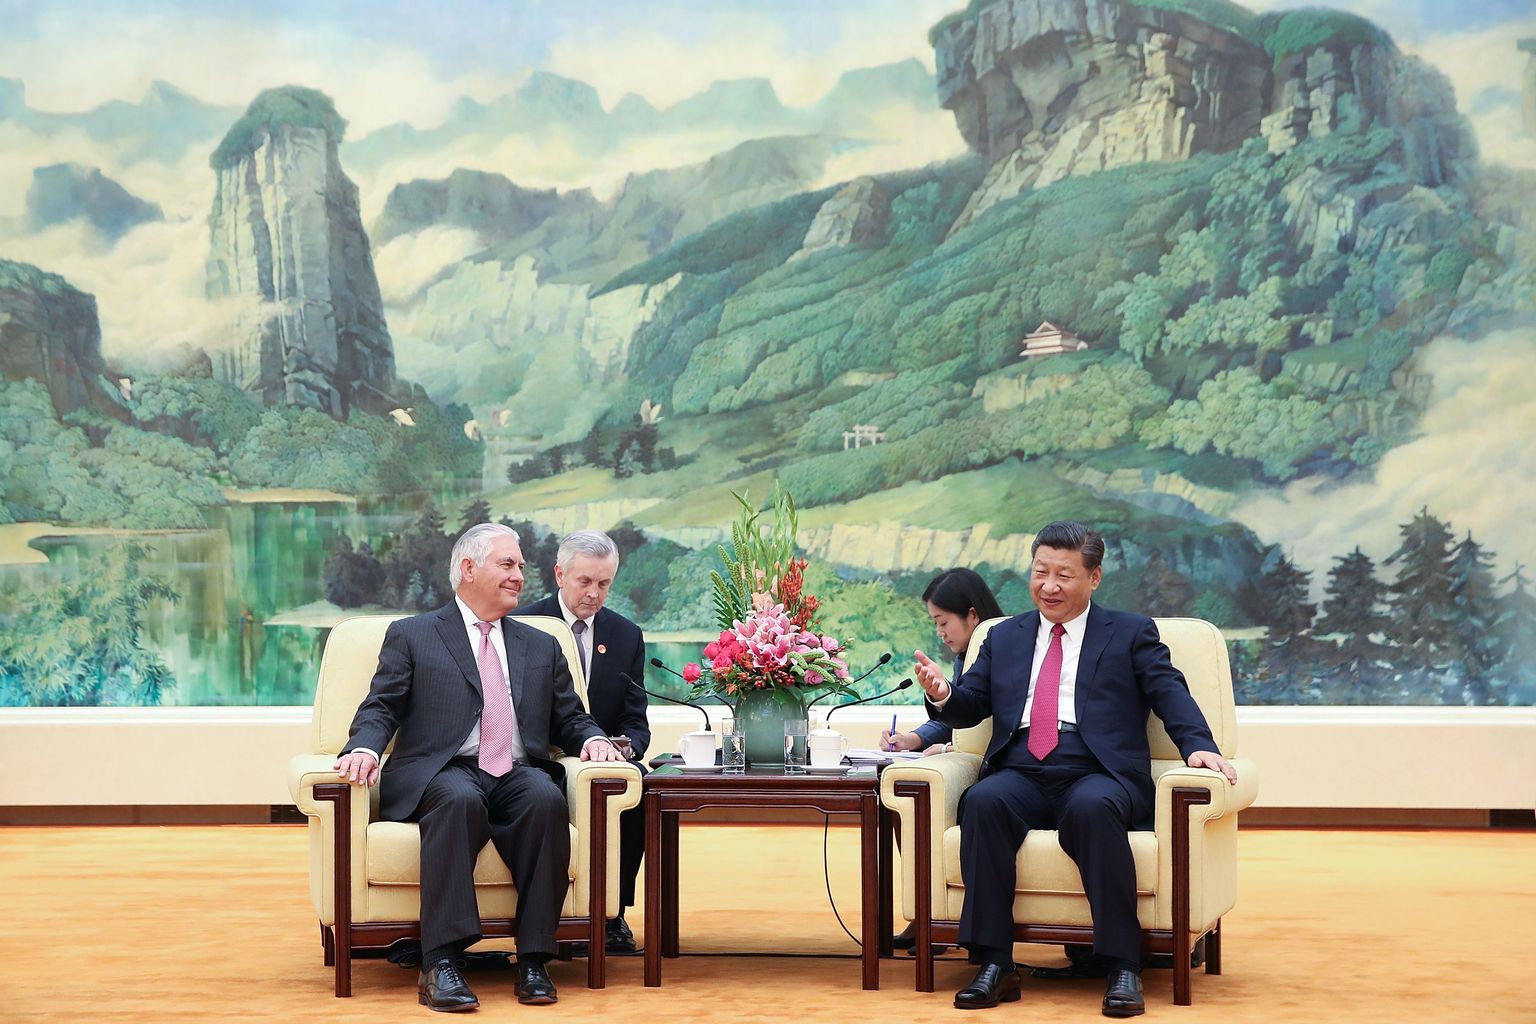 Ameerika Ühendriikide riigisekretär Rex Tillerson ütles läinud laupäeval Pekingis kohtumisel Hiina riigipea Xi Jinpingiga, et tema esmane eesmärk on püüda Põhja-Korea osas «asju maha rahustada».